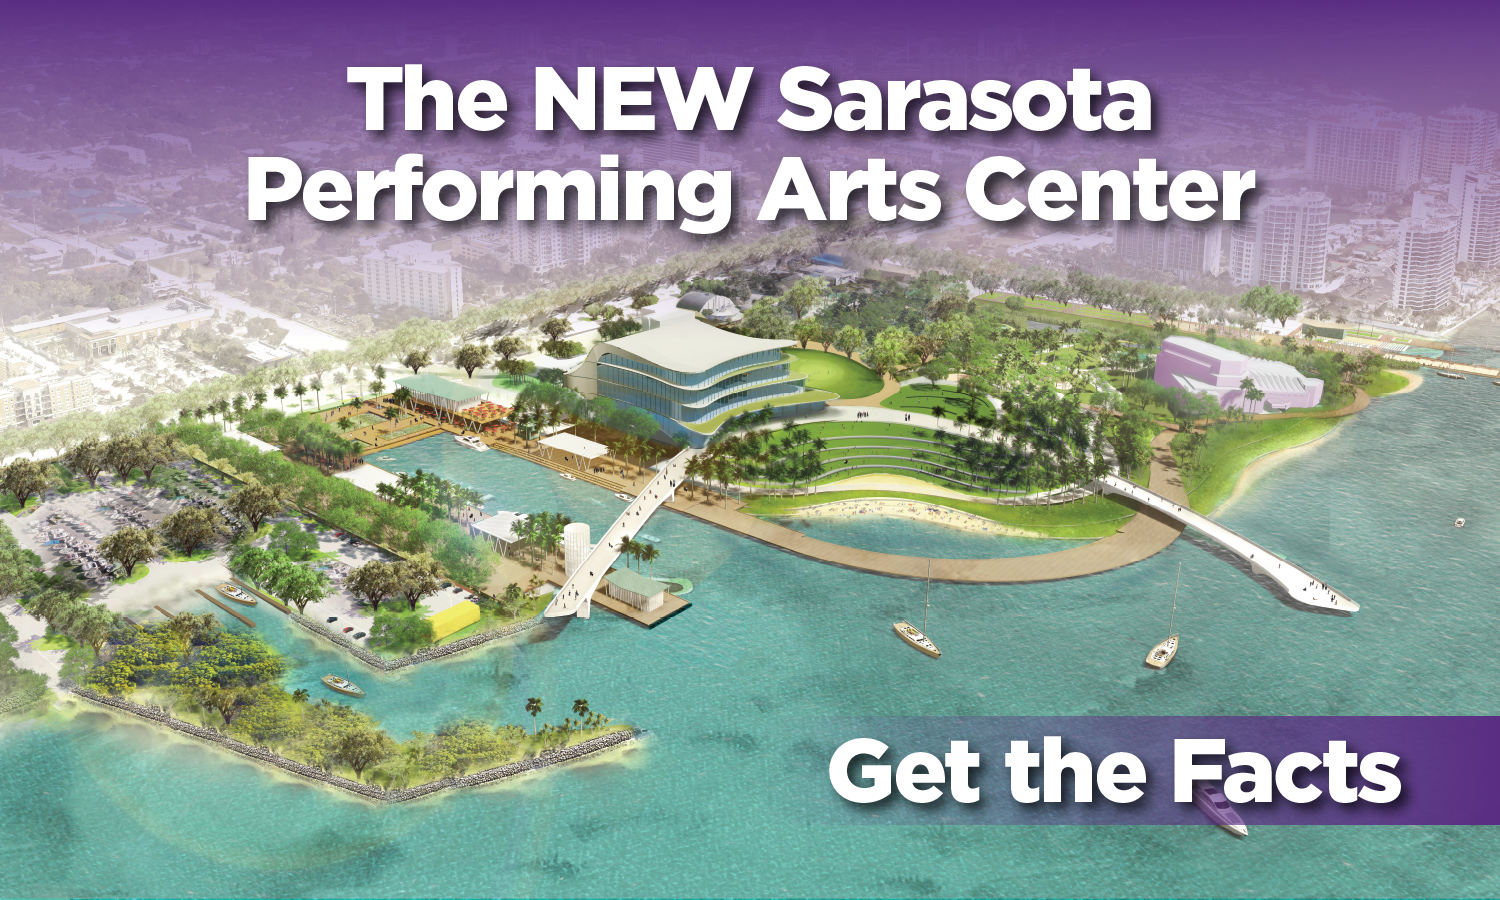 The New Sarasota Performing Arts Center